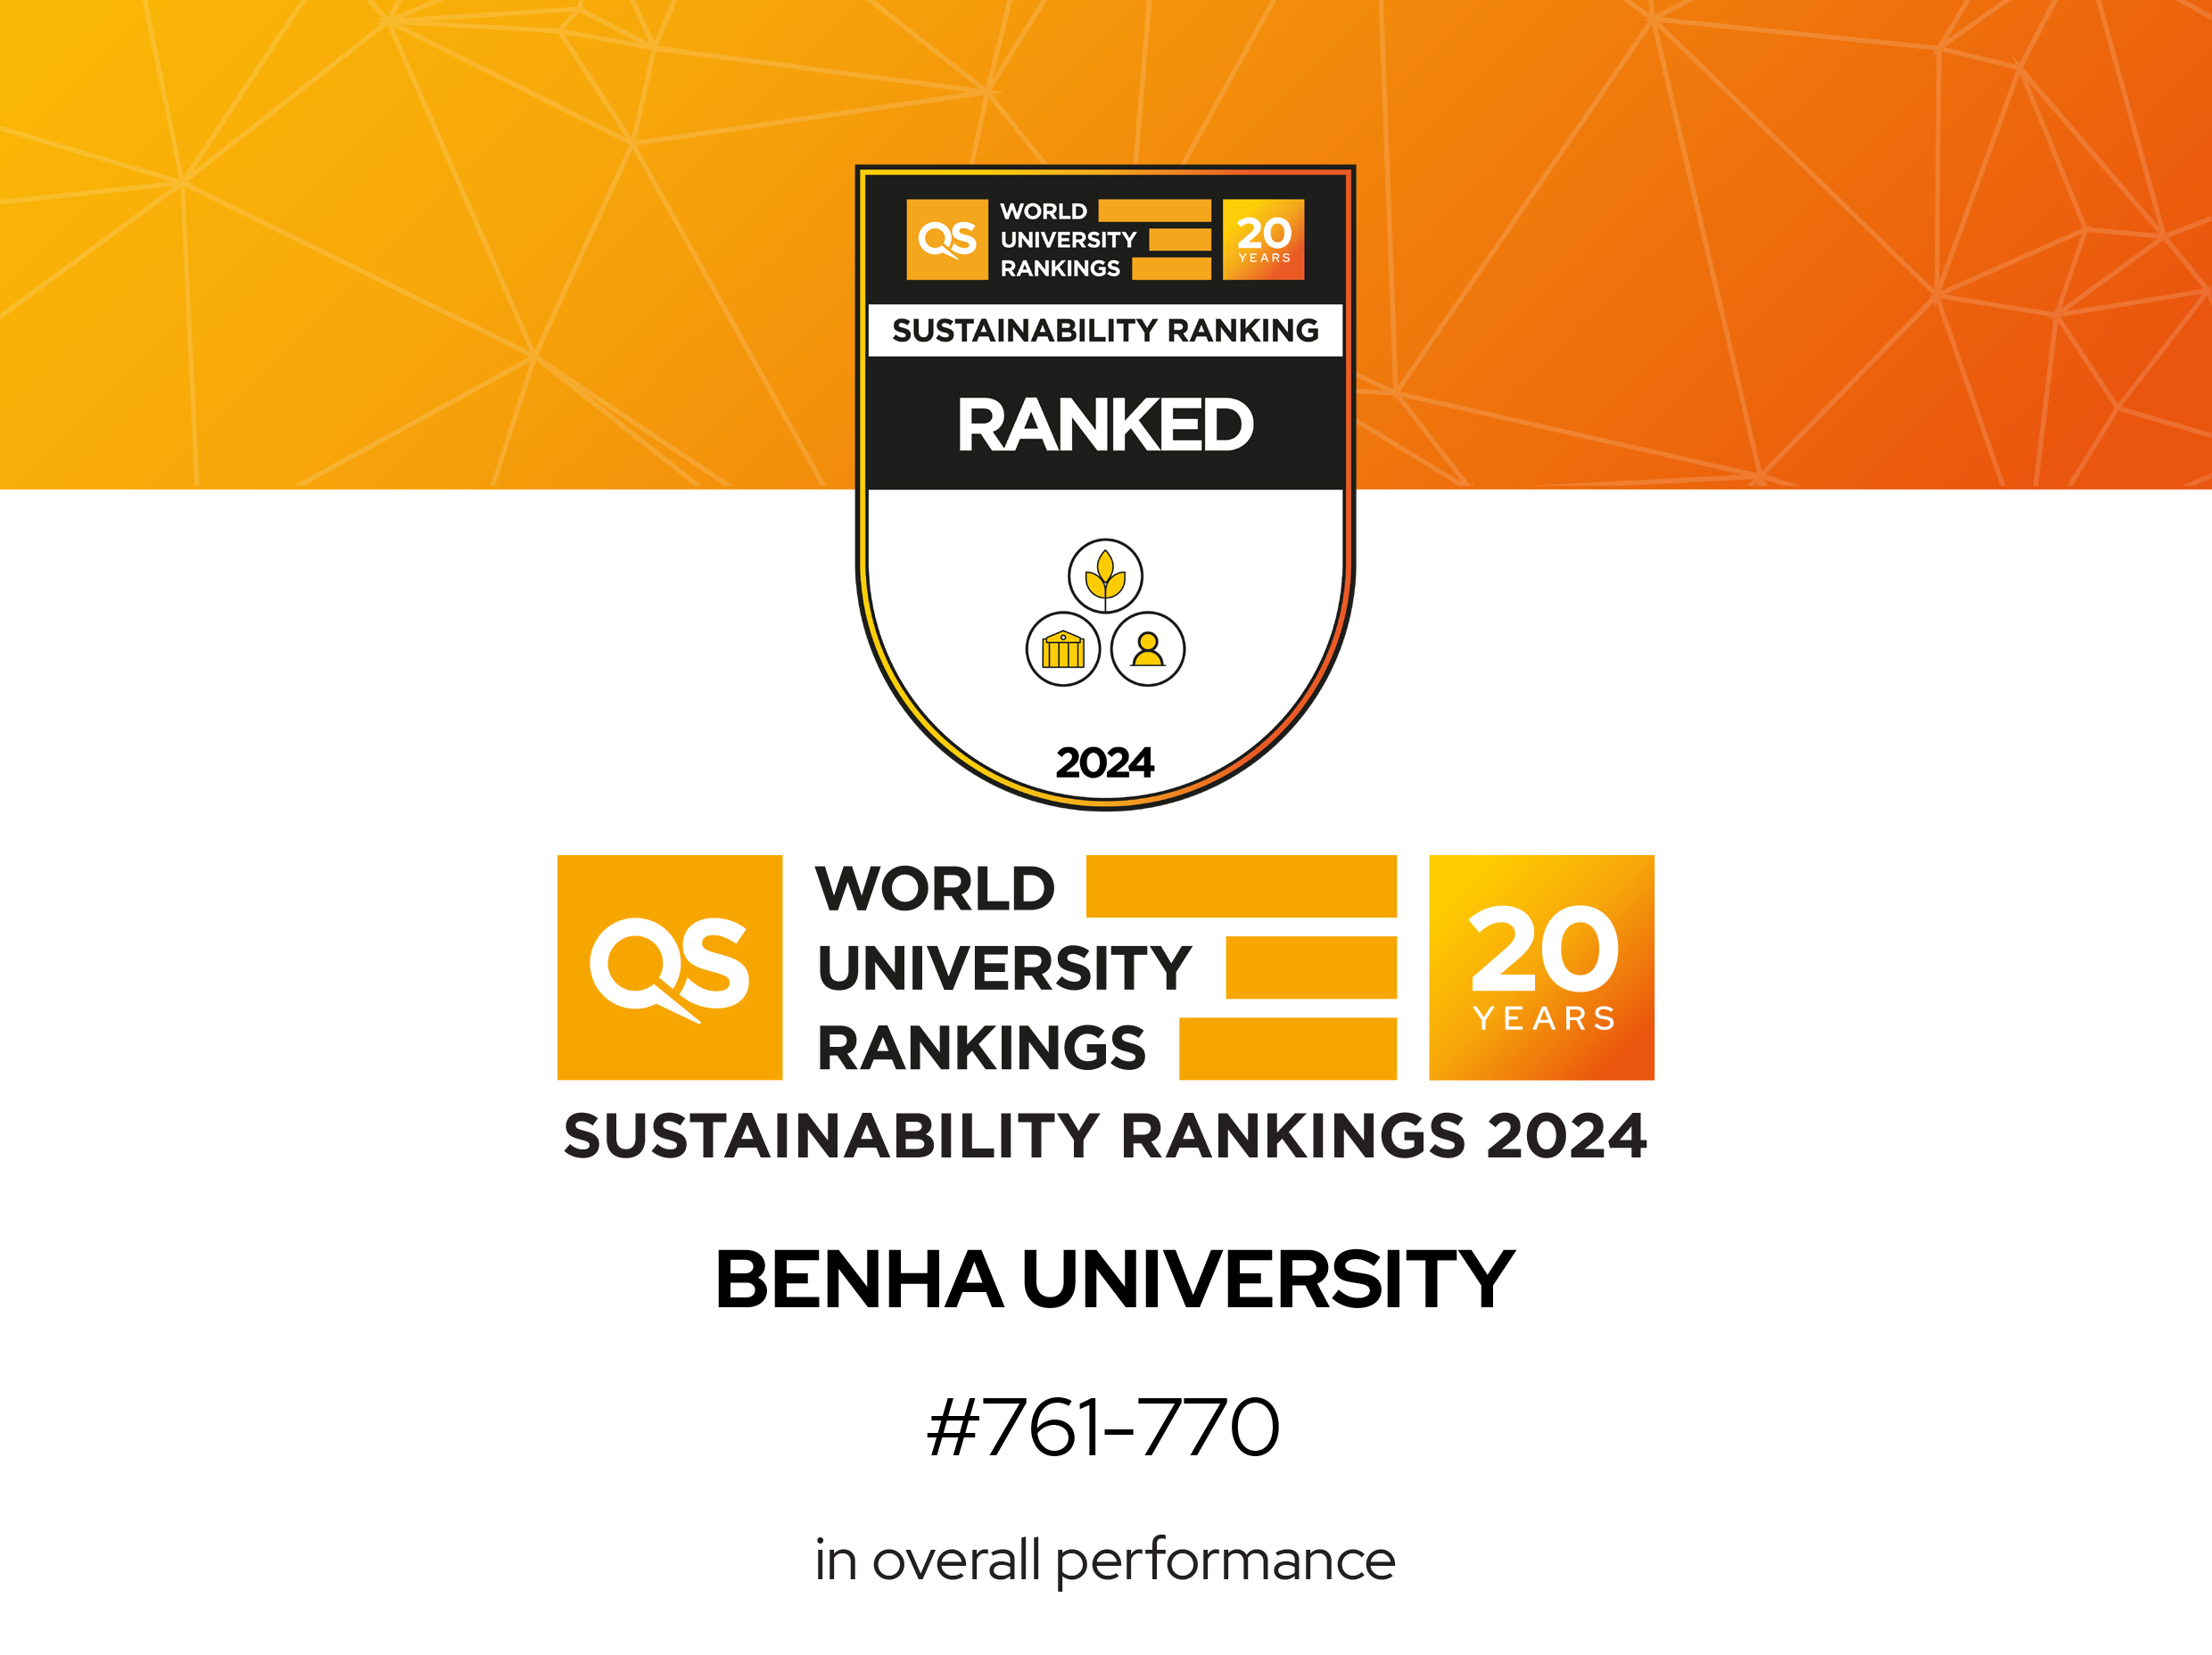 جامعة بنها لأول مره بتصنيف كيو اس للتنمية المستدامة لعام 2024